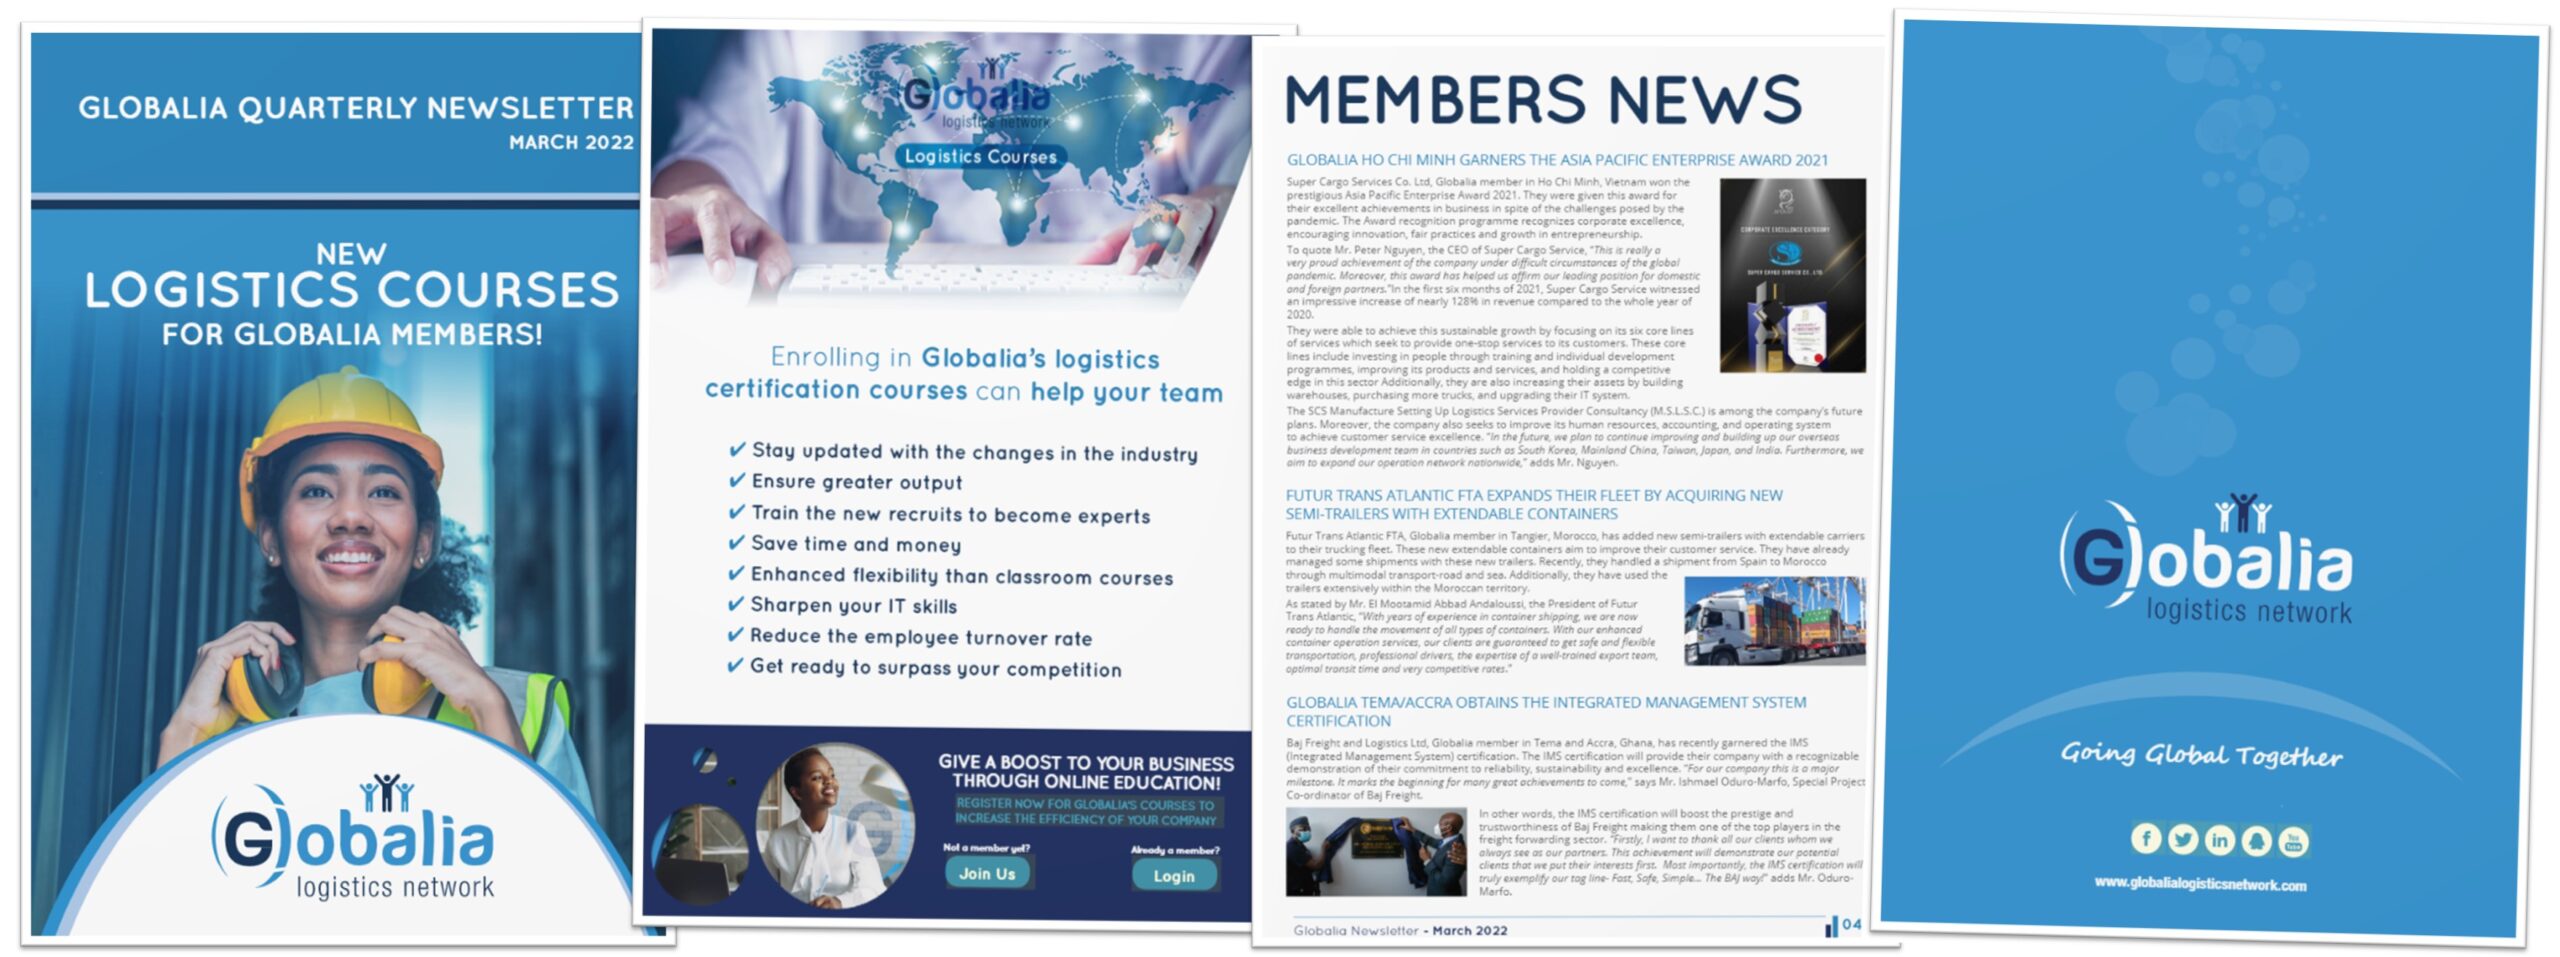 Globalia's Quarterly Newsletter